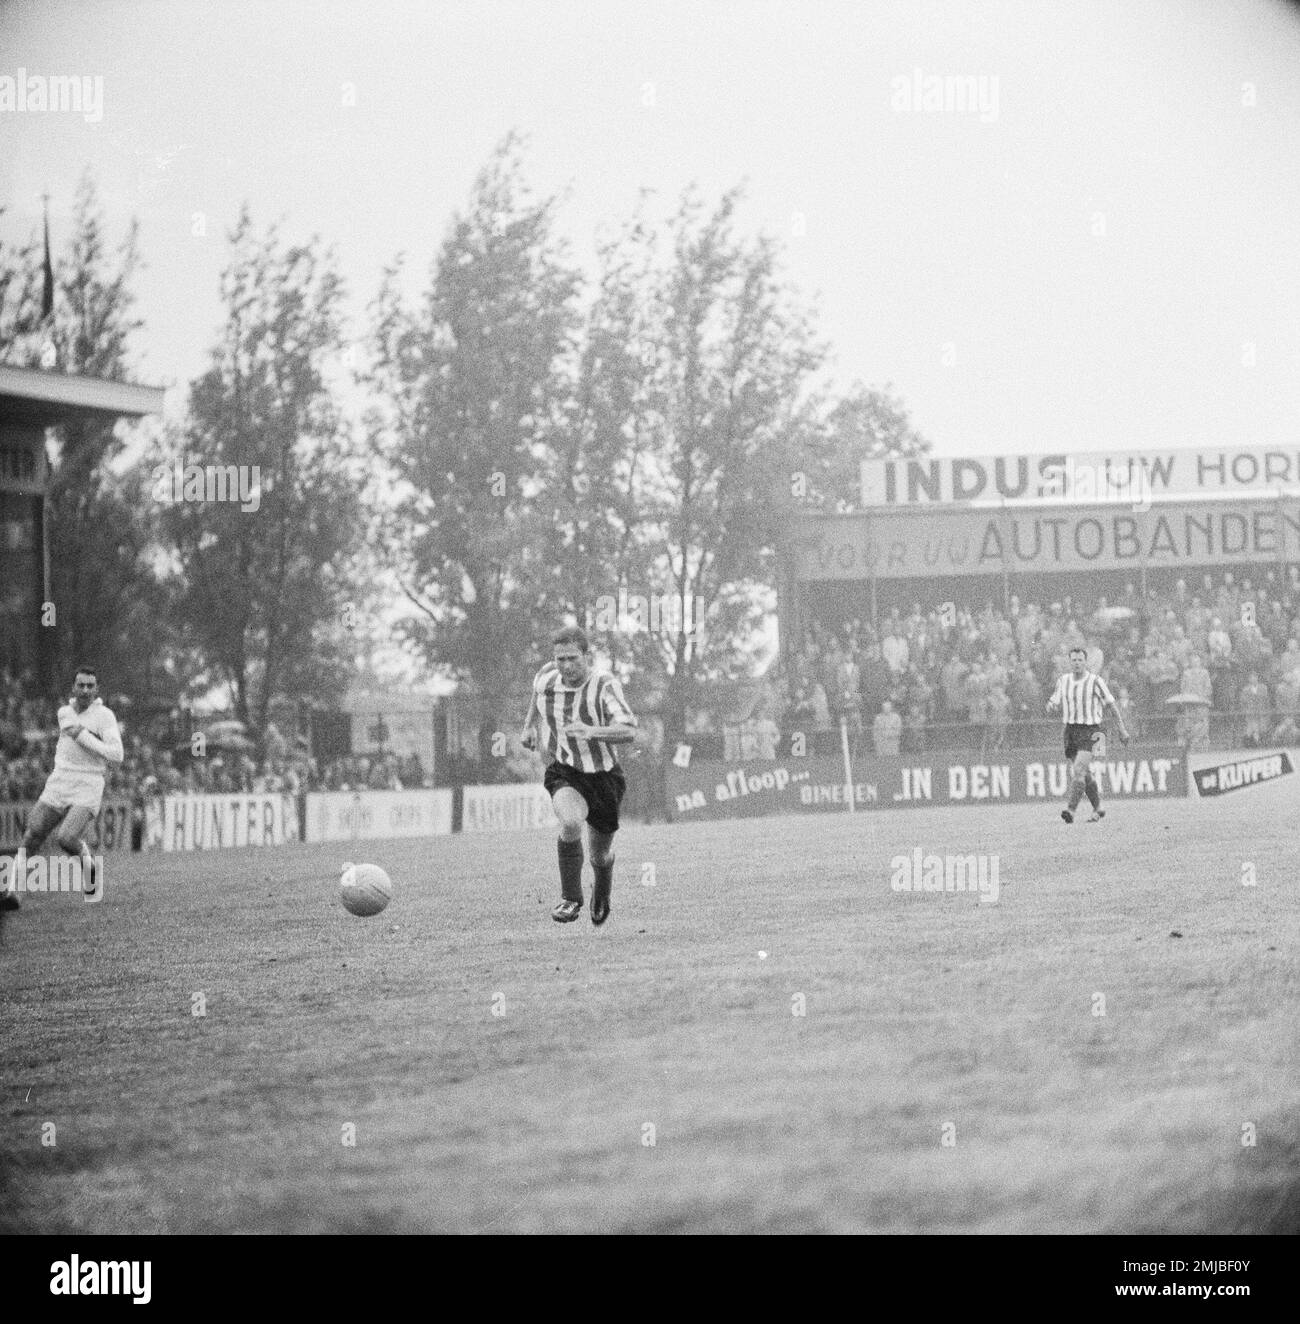 Storia dei Paesi Bassi: Finale KNVB Cup Sparta contro il DHC Football (calcio) match 1-0; Data: 20 giugno 1962 Foto Stock